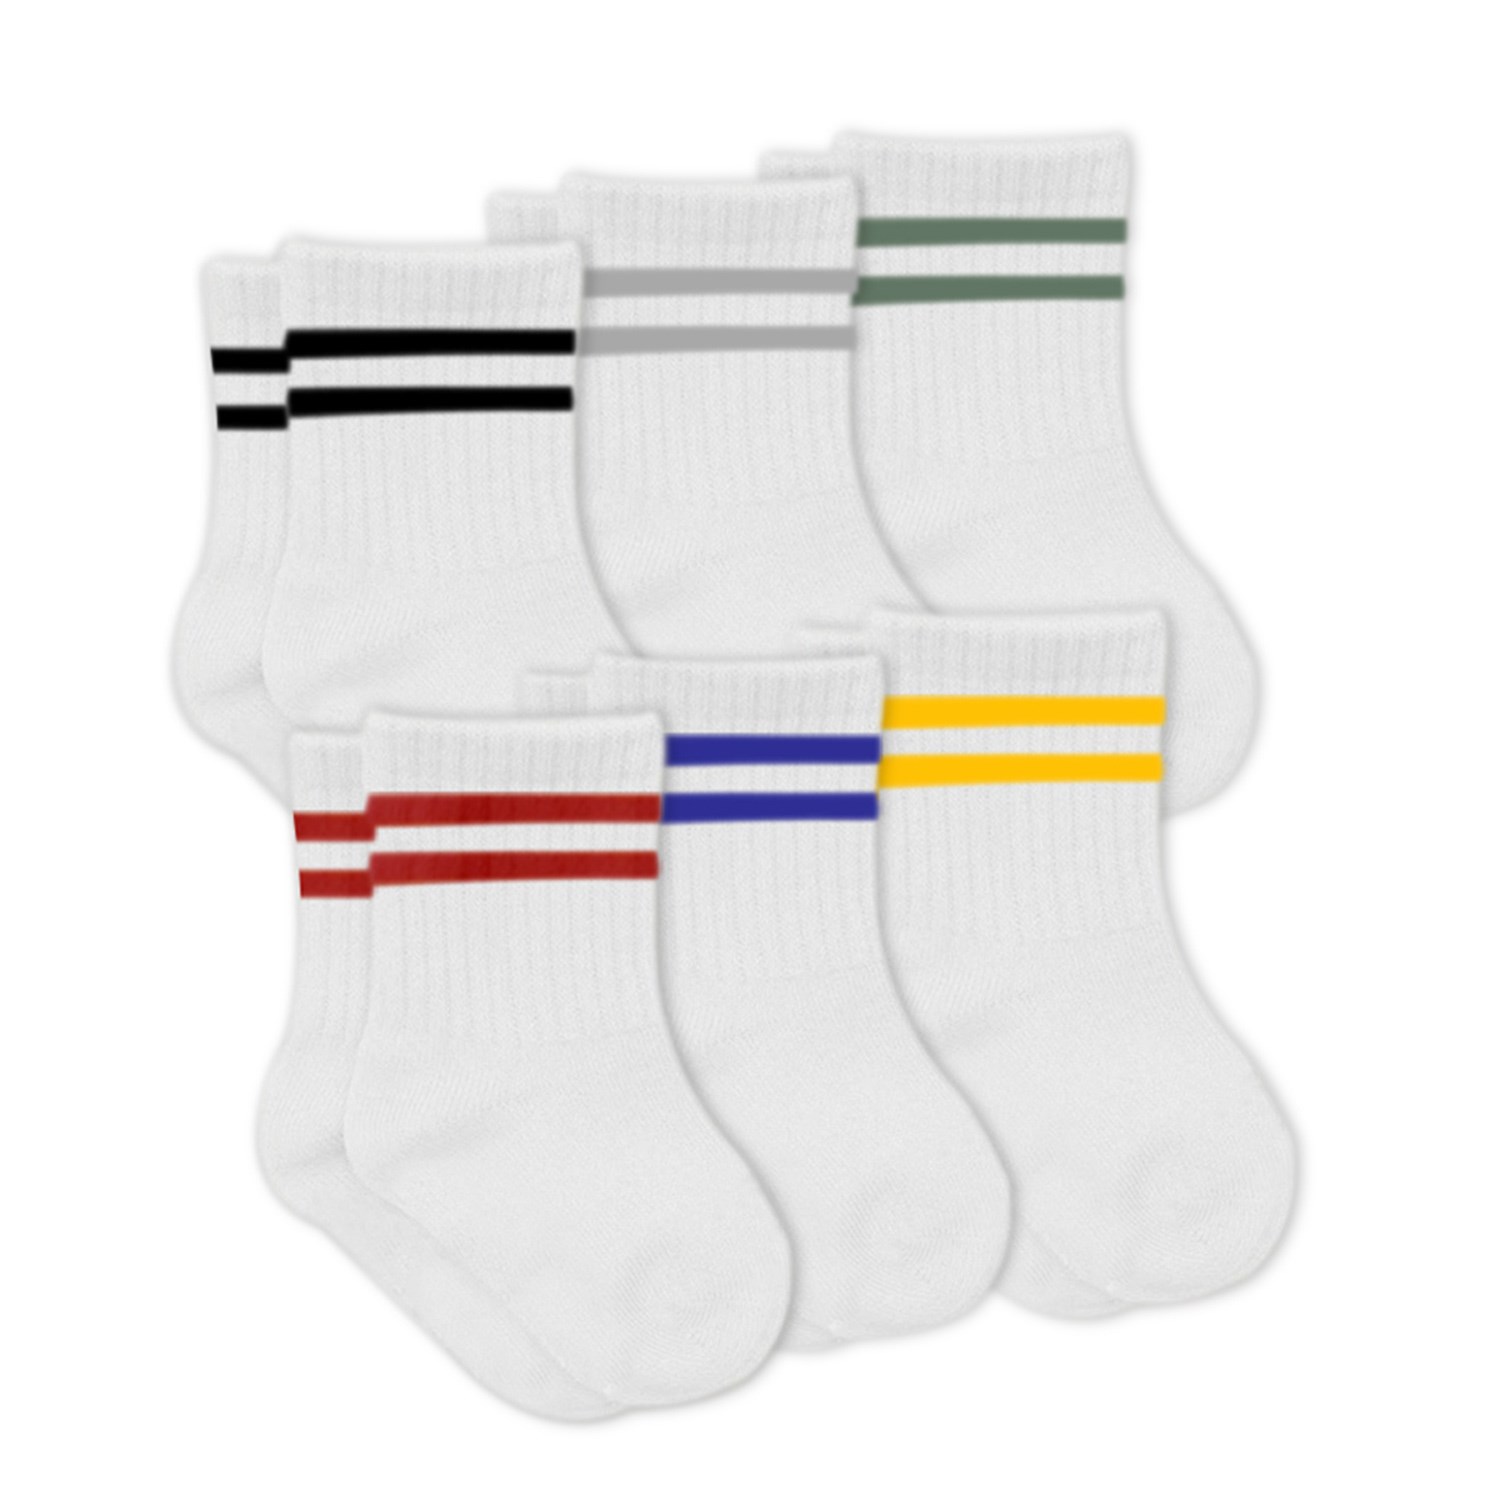 Bistyle 6'lı Bebek Çorabı (Çemberli) 6019 Kırmızı-Beyaz